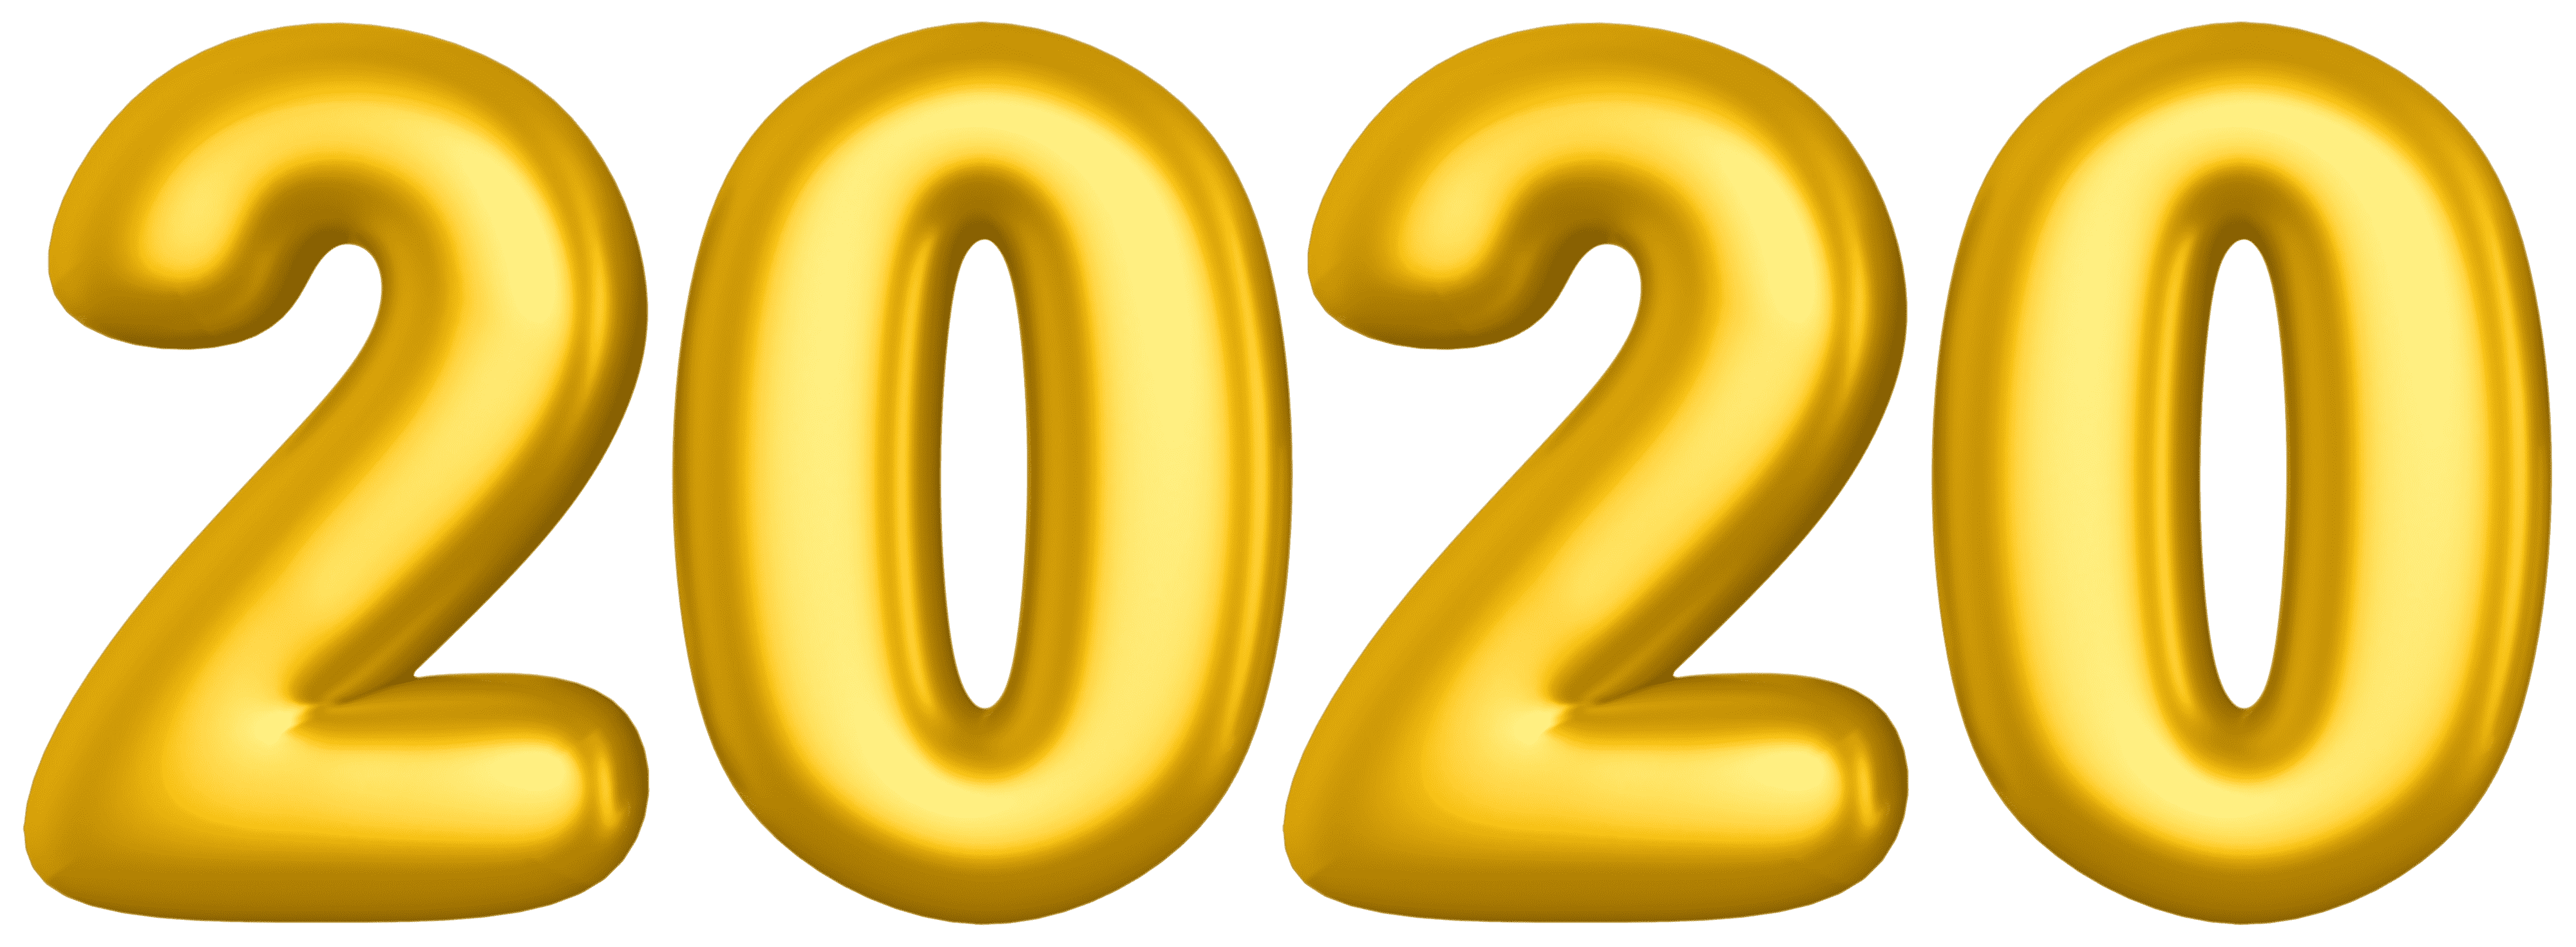 2020. Золотой сайт 2020. 2020 Надпись золото. Золотые цифры 2020 на прозрачном фоне. Цифры 2020.